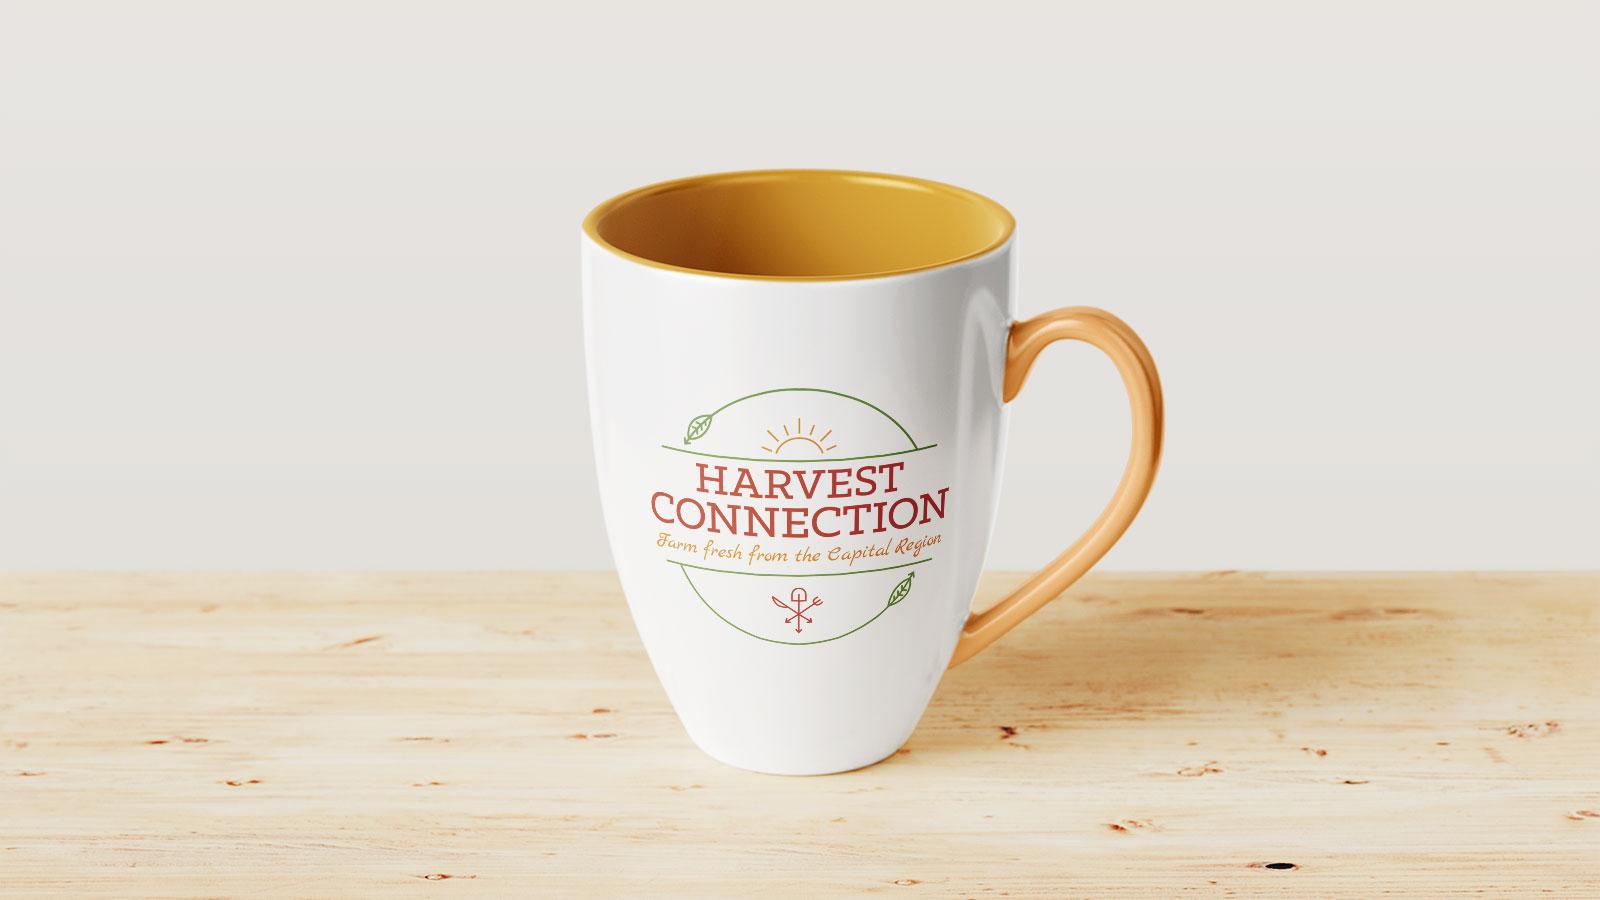 Harvest Connection | Harvest Connection logo mug